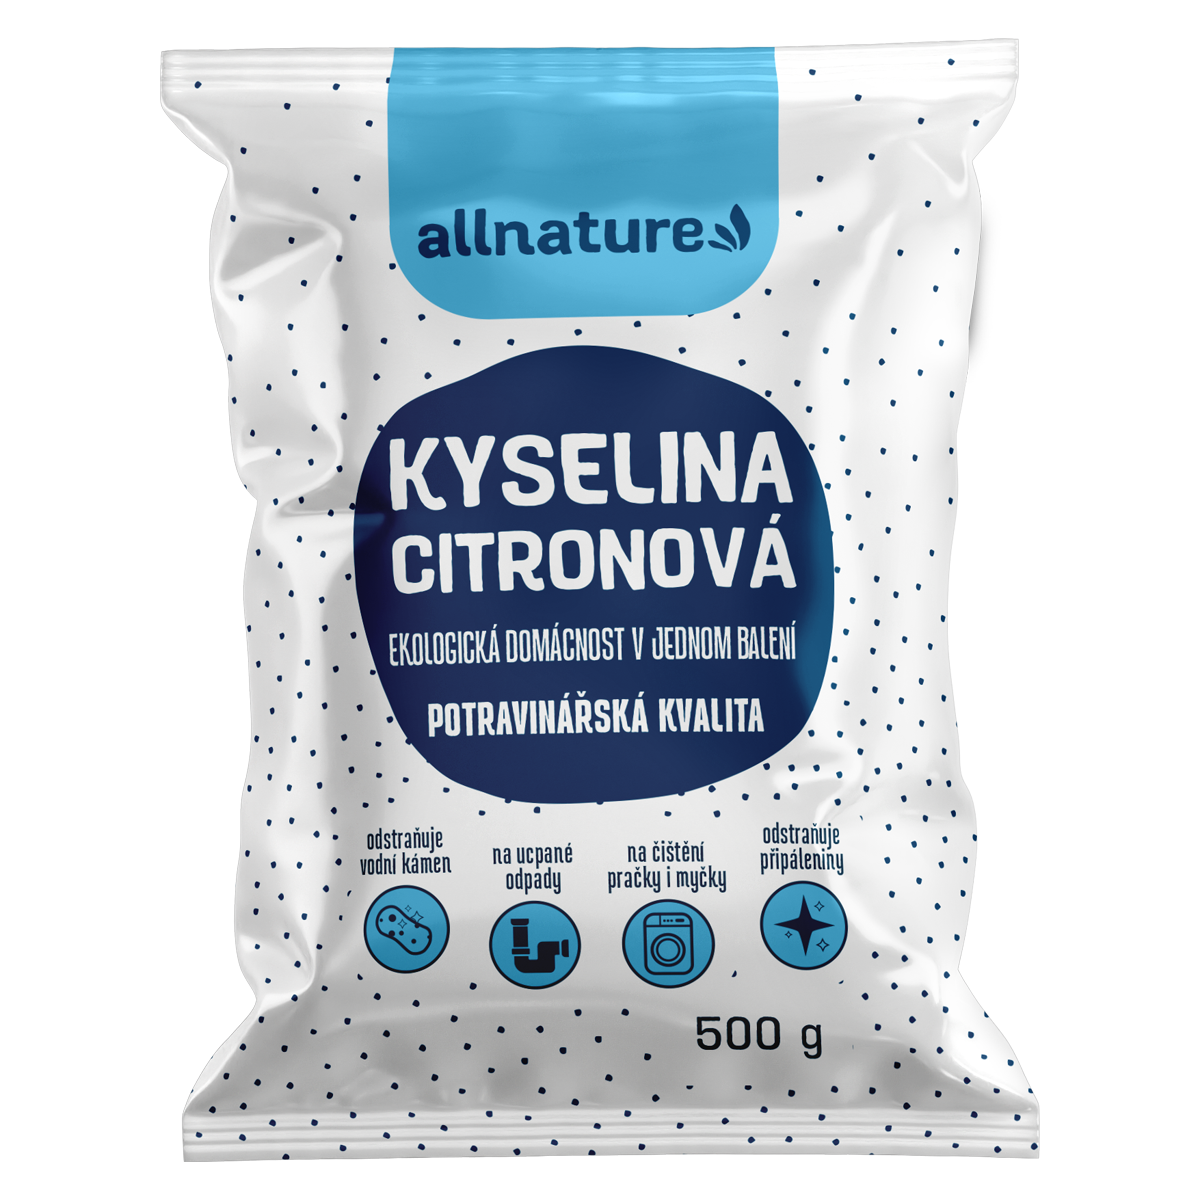 Allnature Kyselina citronová (500 g) - II. jakost - potravinářská kvalita Allnature